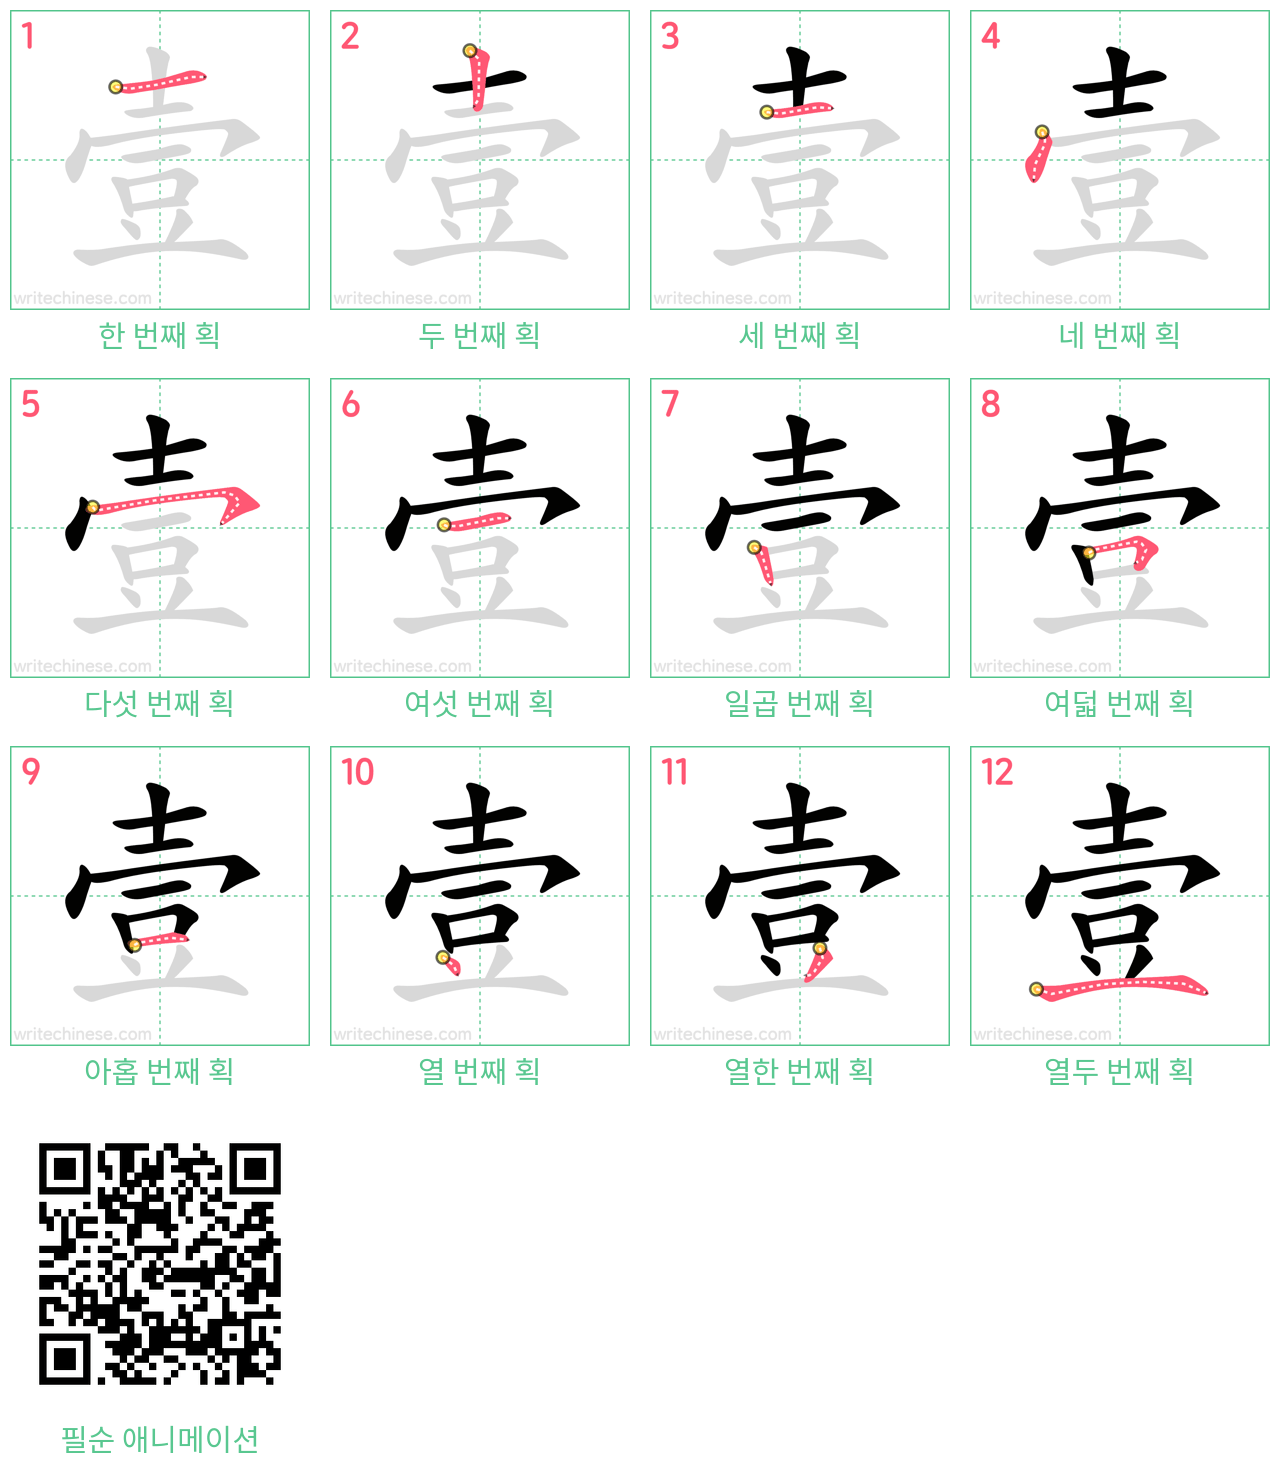 壹 step-by-step stroke order diagrams